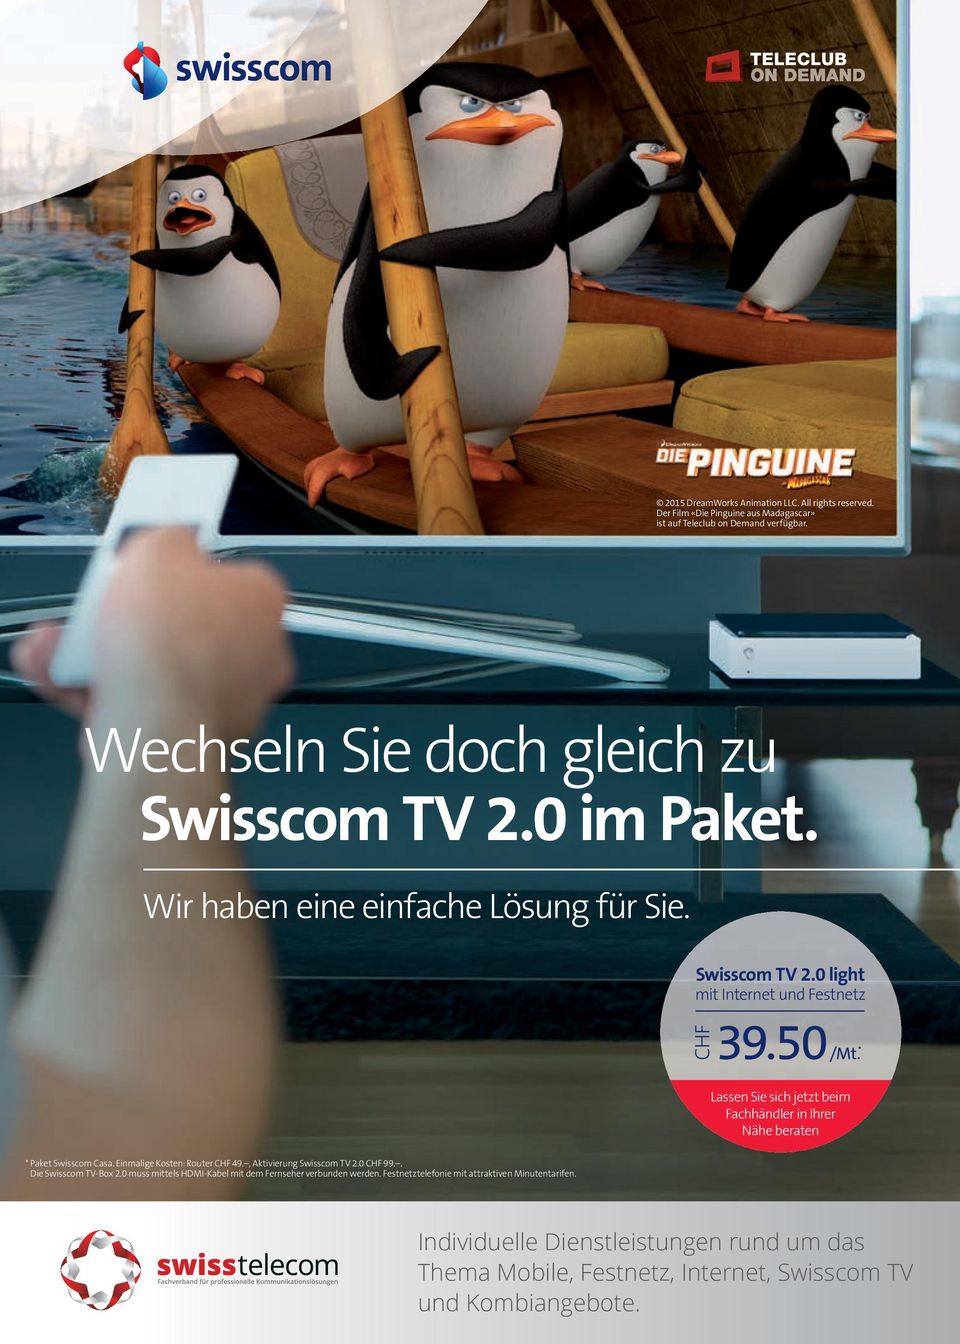 Lassen Sie sich jetzt beim Fachhändler in Ihrer Nähe beraten Paket Swisscom Casa. Einmalige Kosten: Router CHF 49., Aktivierung Swisscom TV 2.0 CHF 99.